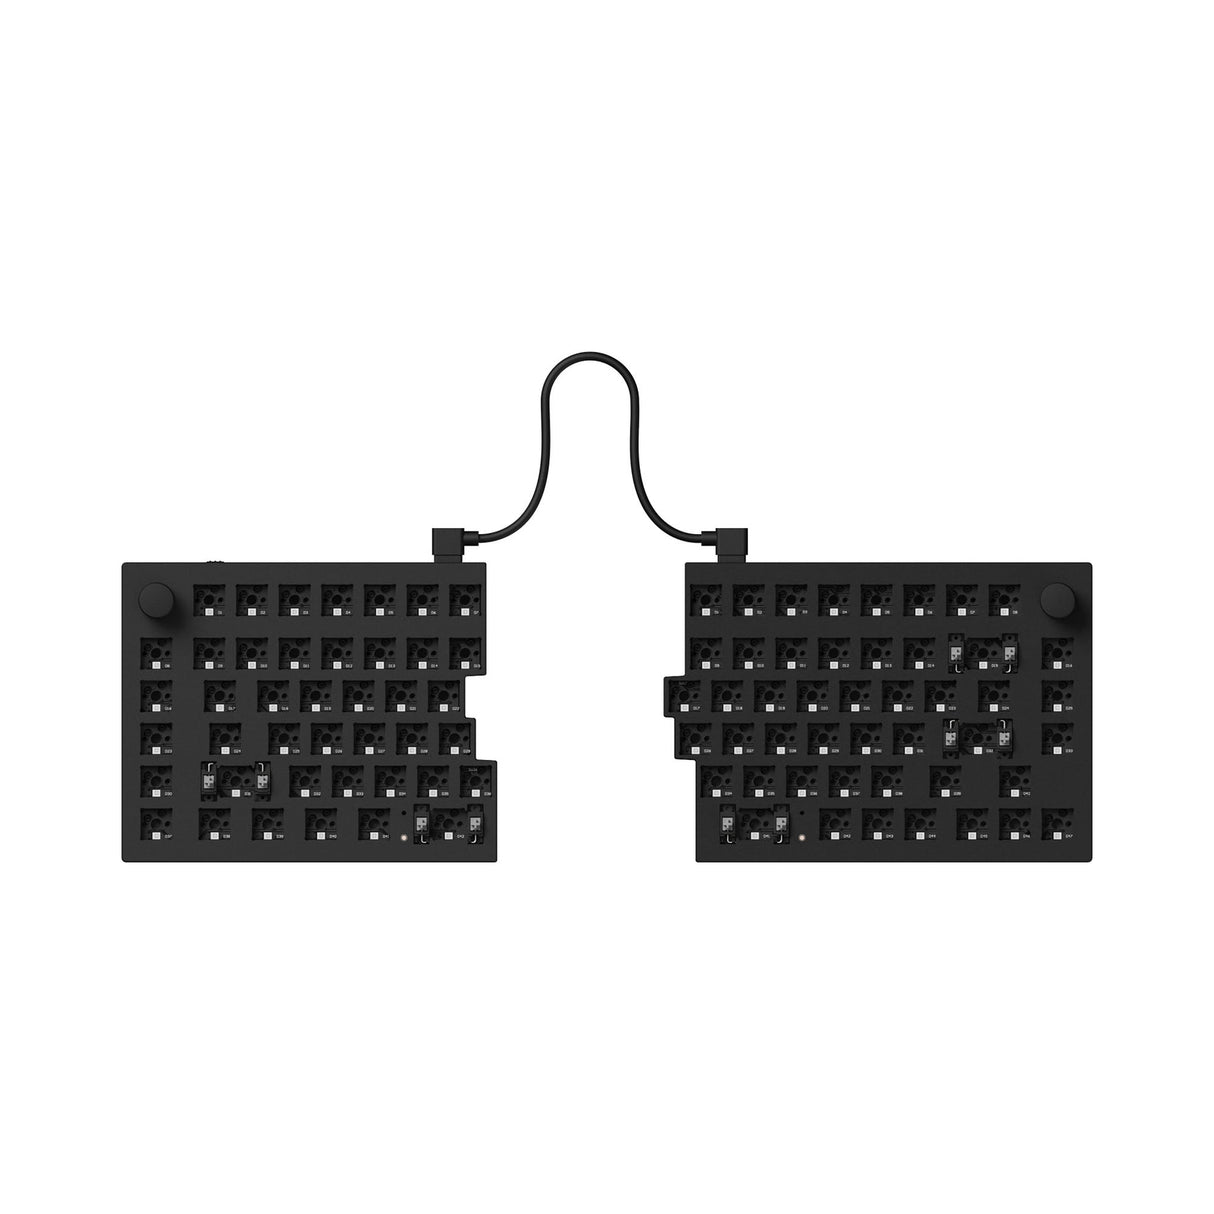 Keychron Q11 QMK benutzerdefinierte mechanische Tastatur (US-Layout)